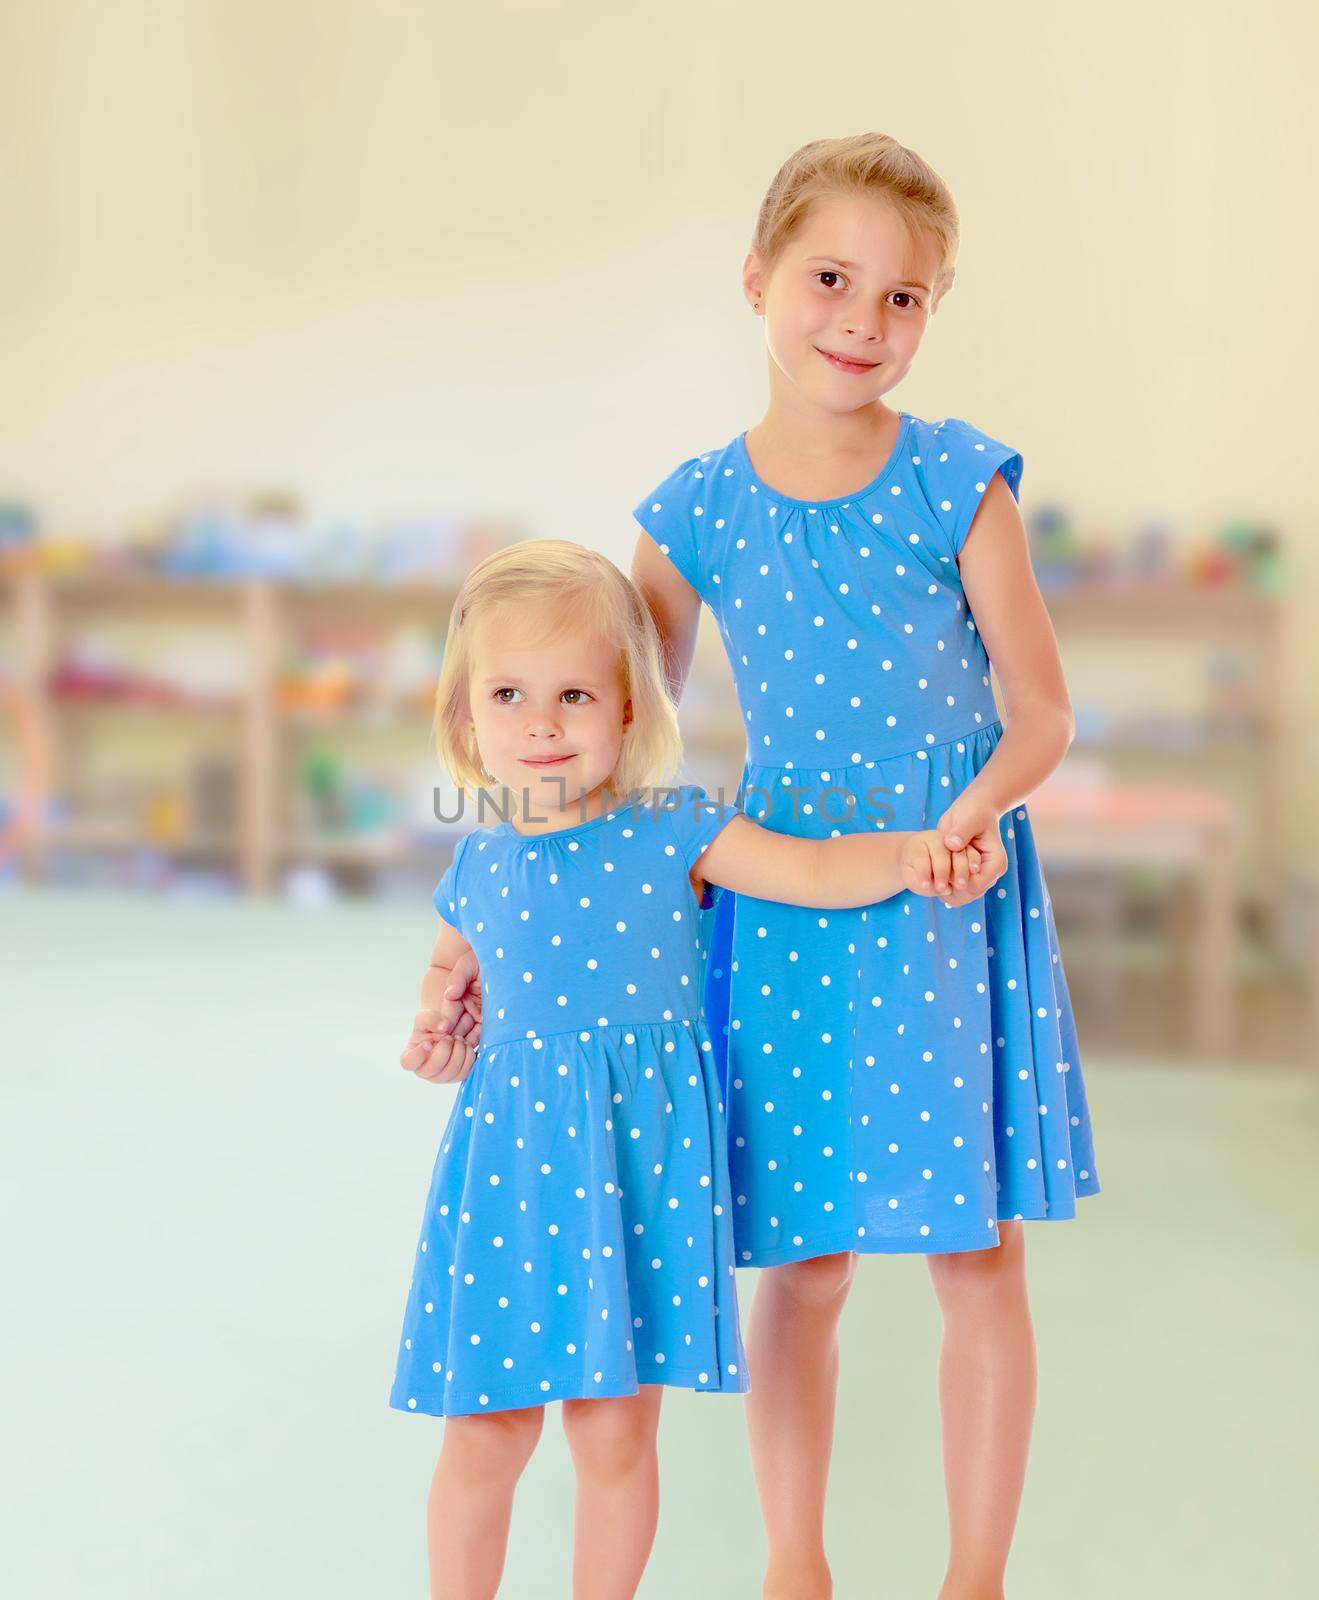 Sisters in blue dresses by kolesnikov_studio